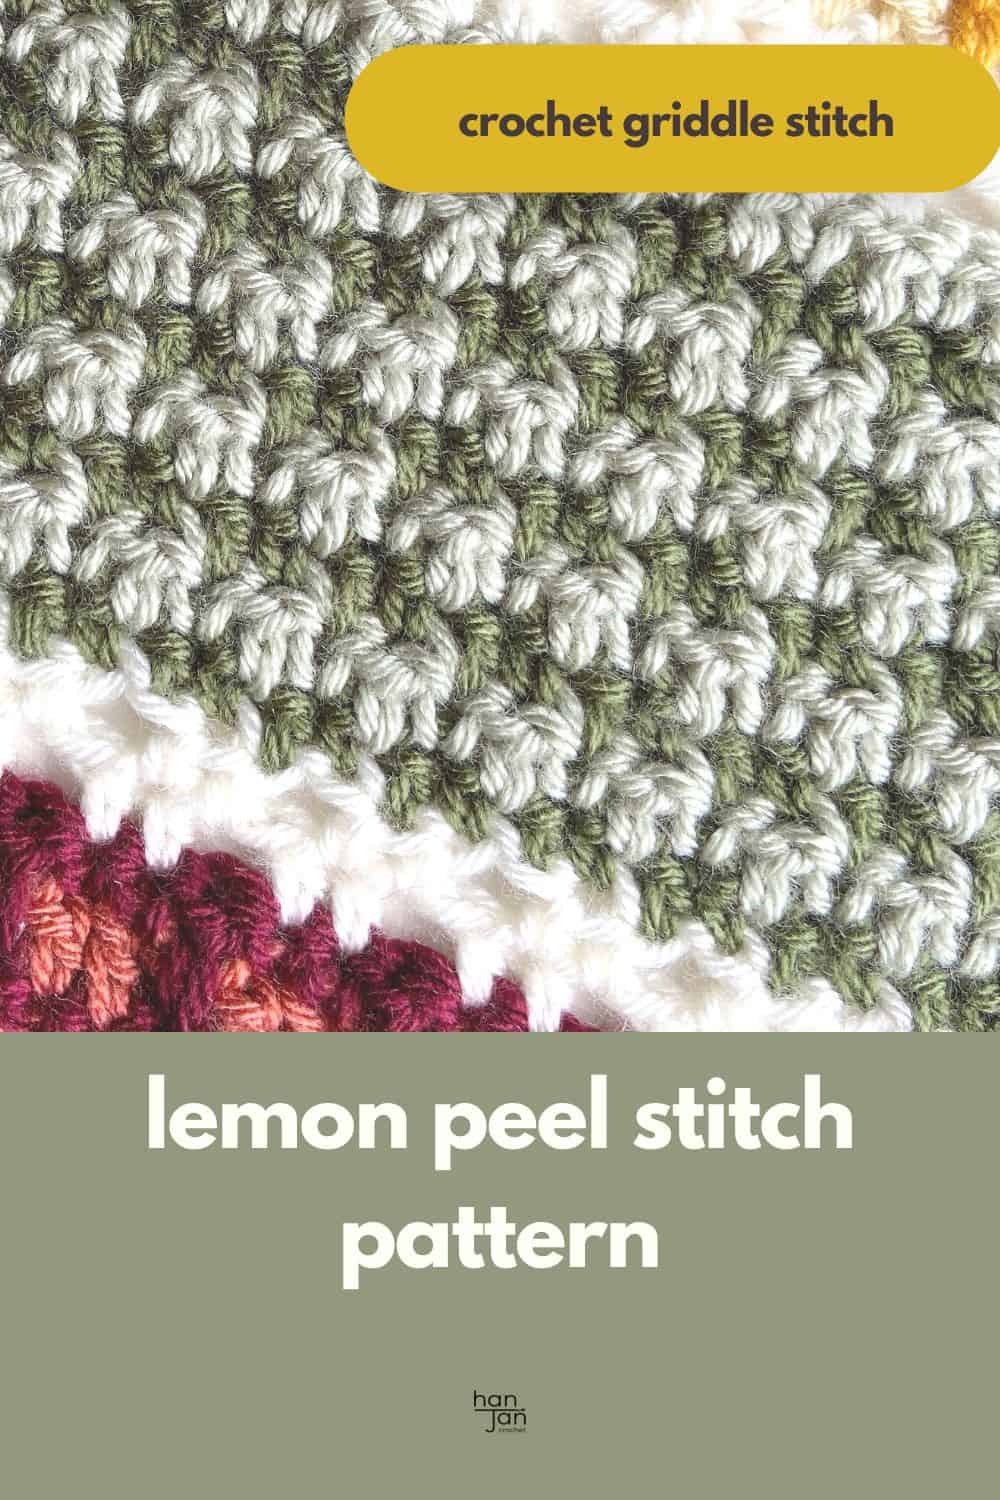 Lemon peel stitch crochet pattern.